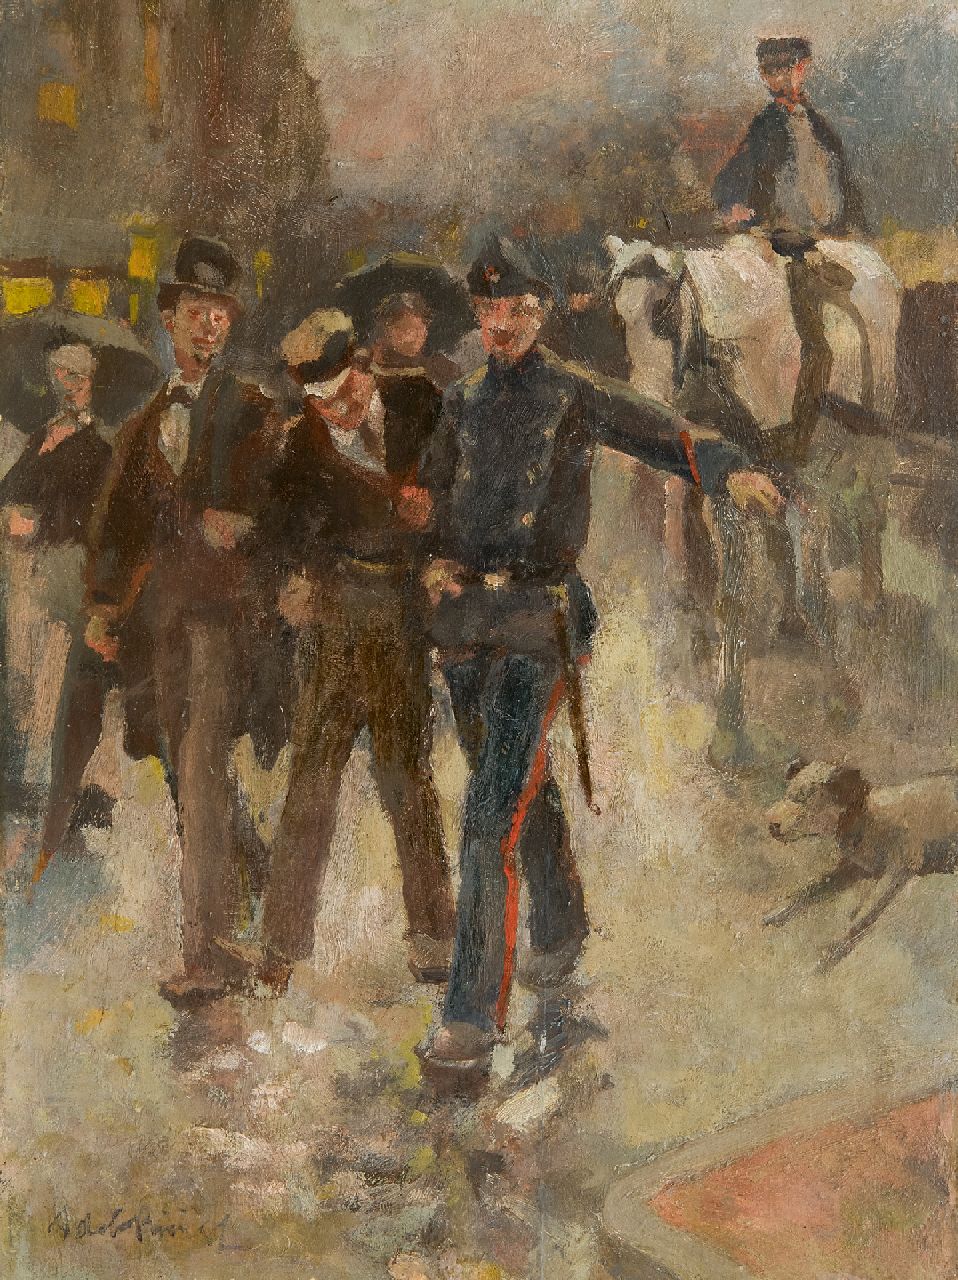 Rivière A.P. de la | Adrianus Philippus 'Adriaan' de la Rivière | Paintings offered for sale | Under arrest, oil on panel 25.8 x 19.5 cm, signed l.l.